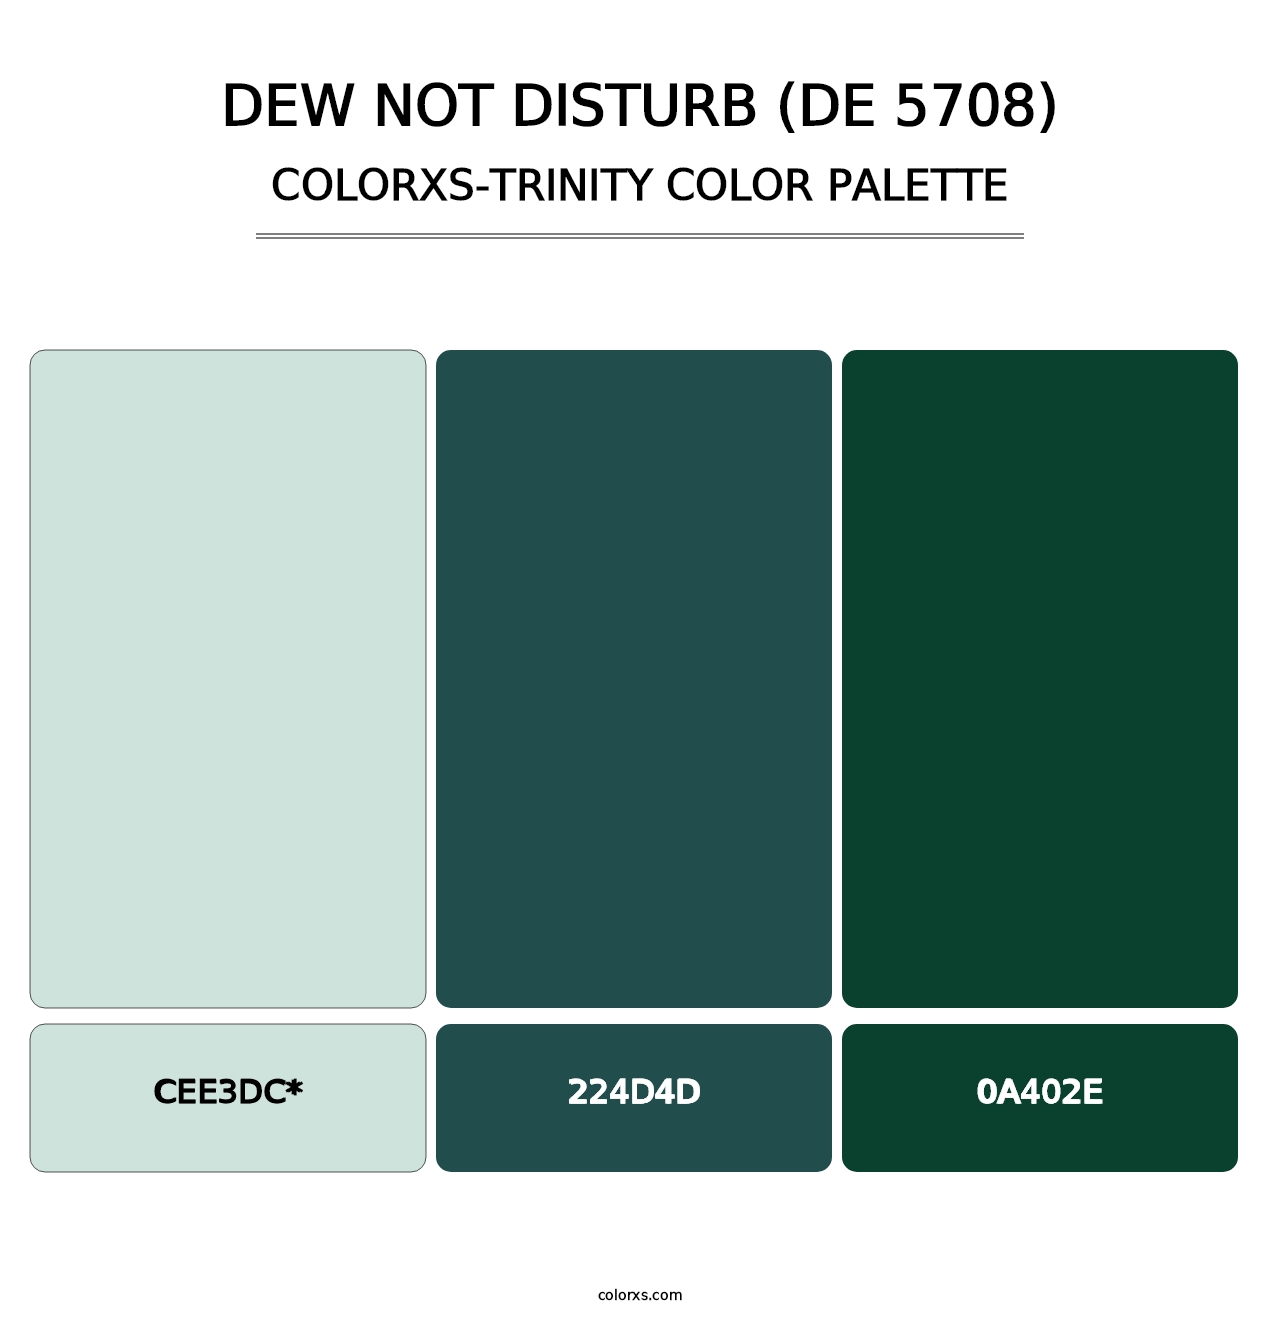 Dew Not Disturb (DE 5708) - Colorxs Trinity Palette